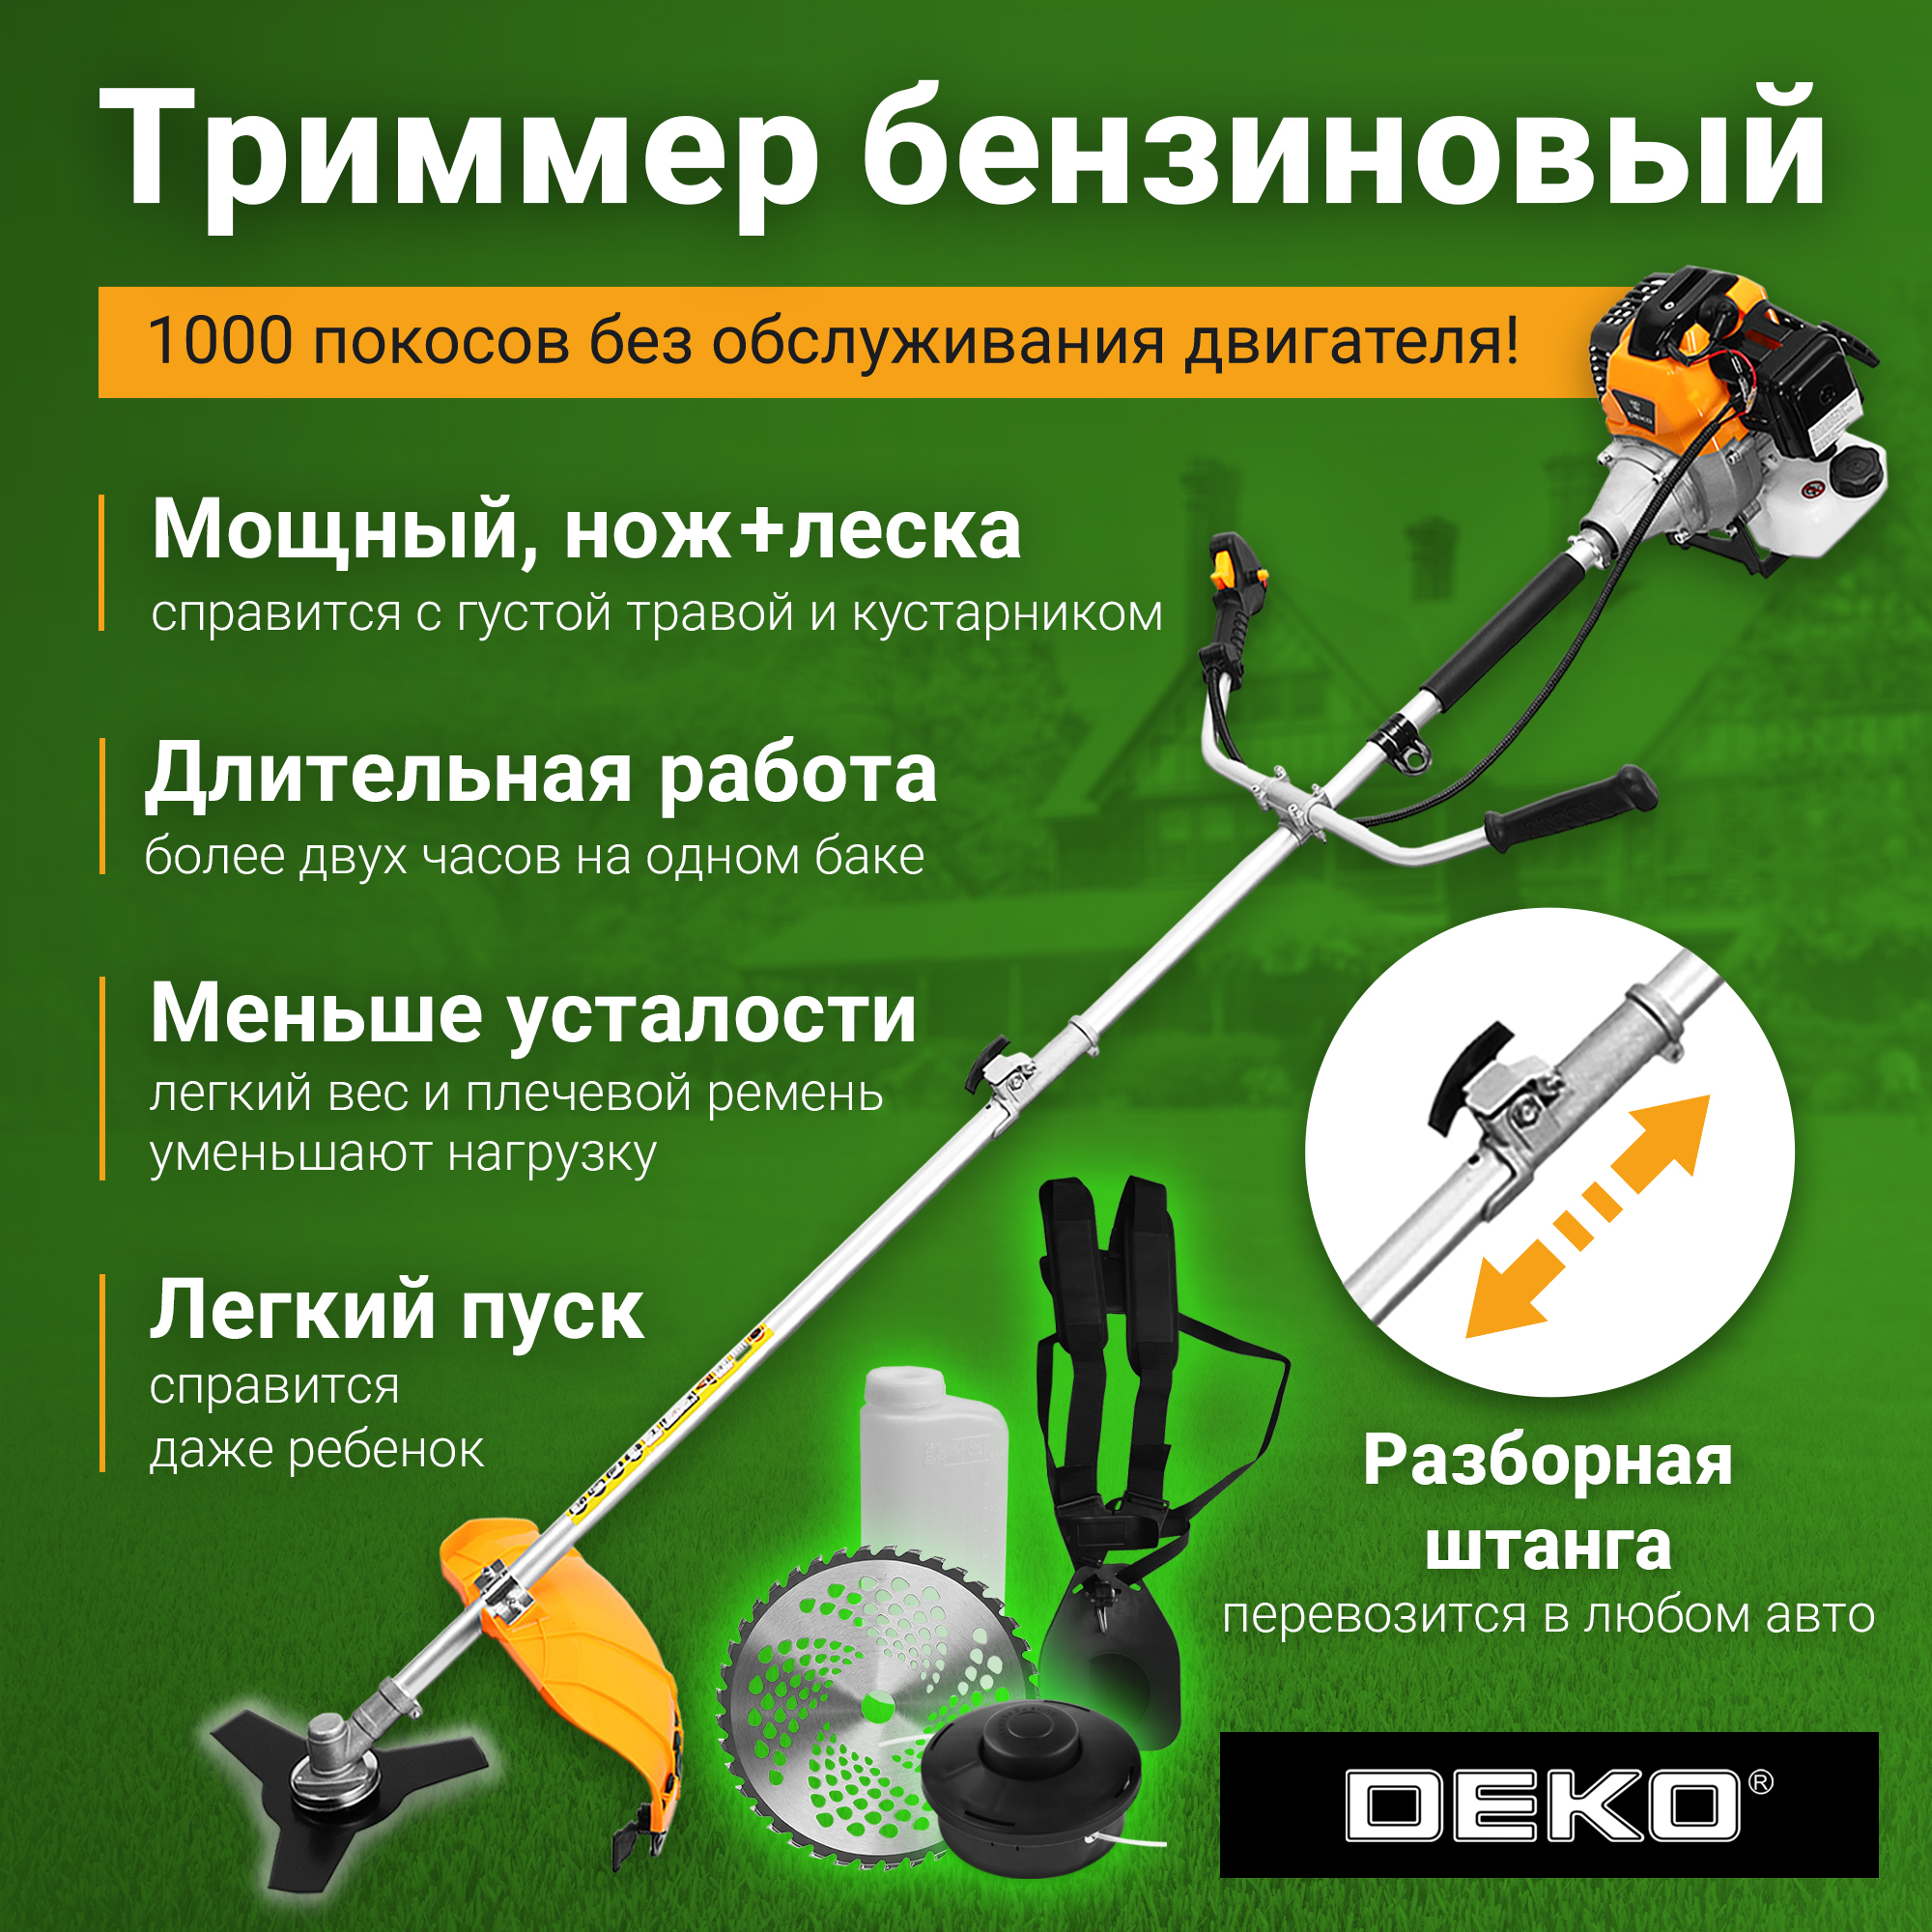 Триммер бензиновый DEKO DKTR52 SET 10, леска/нож/диск 063-4468 - купить в Москве, цены на Мегамаркет | 600016376935